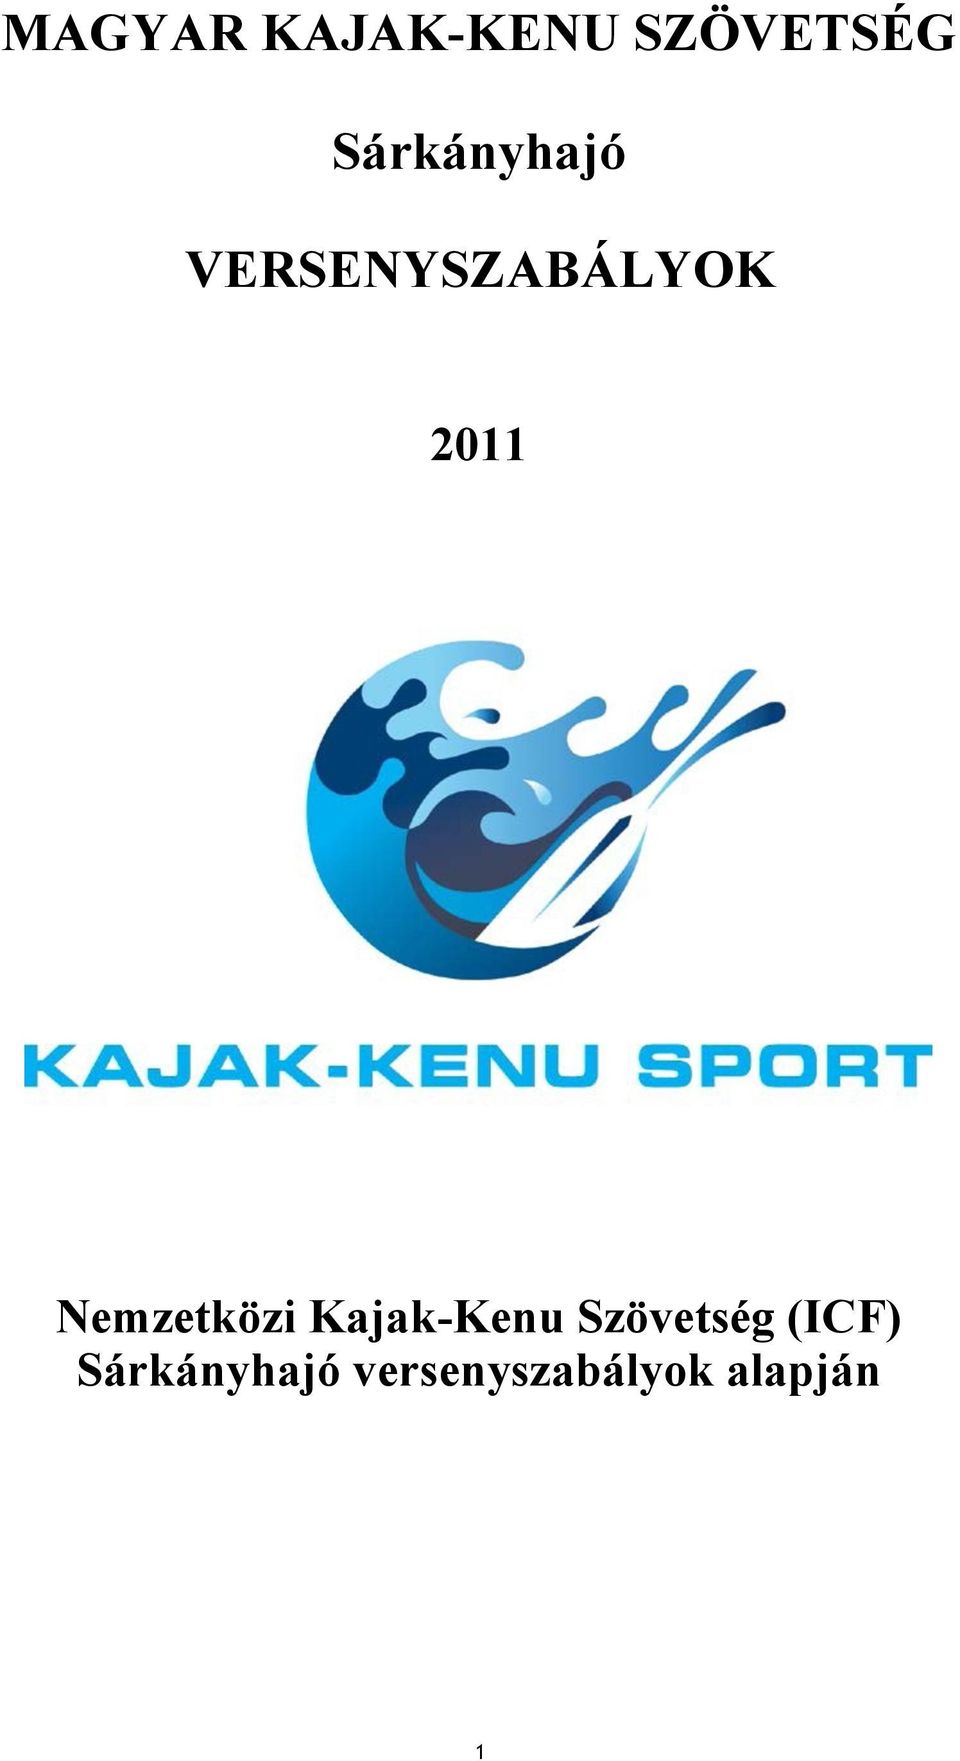 Nemzetközi Kajak-Kenu Szövetség